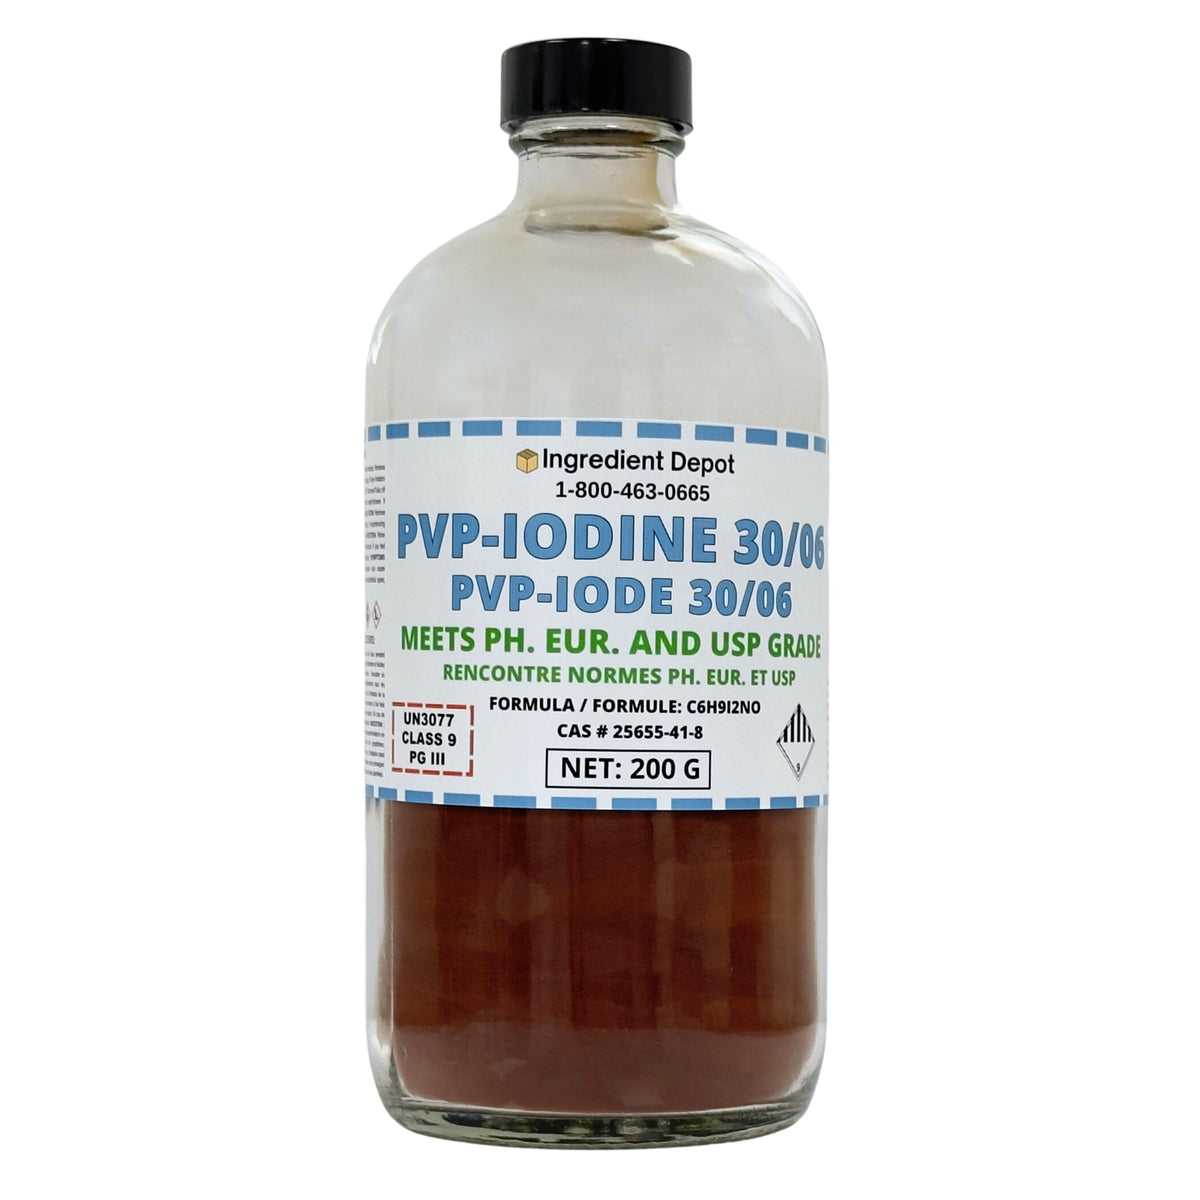 PVP-Iodine 30/06 (PVP-I, Povidone-Iodine) 200g